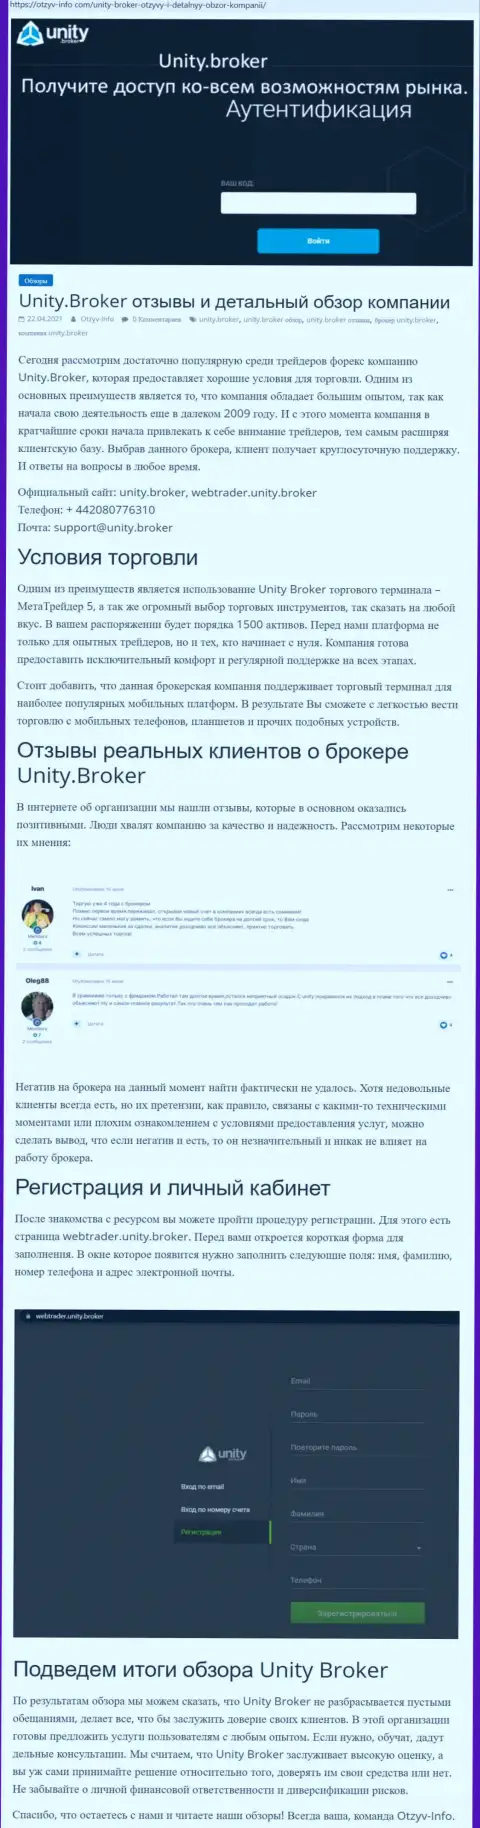 Обзор работы Форекс-дилингового центра УнитиБрокер на интернет-ресурсе Otzyv-Info Com